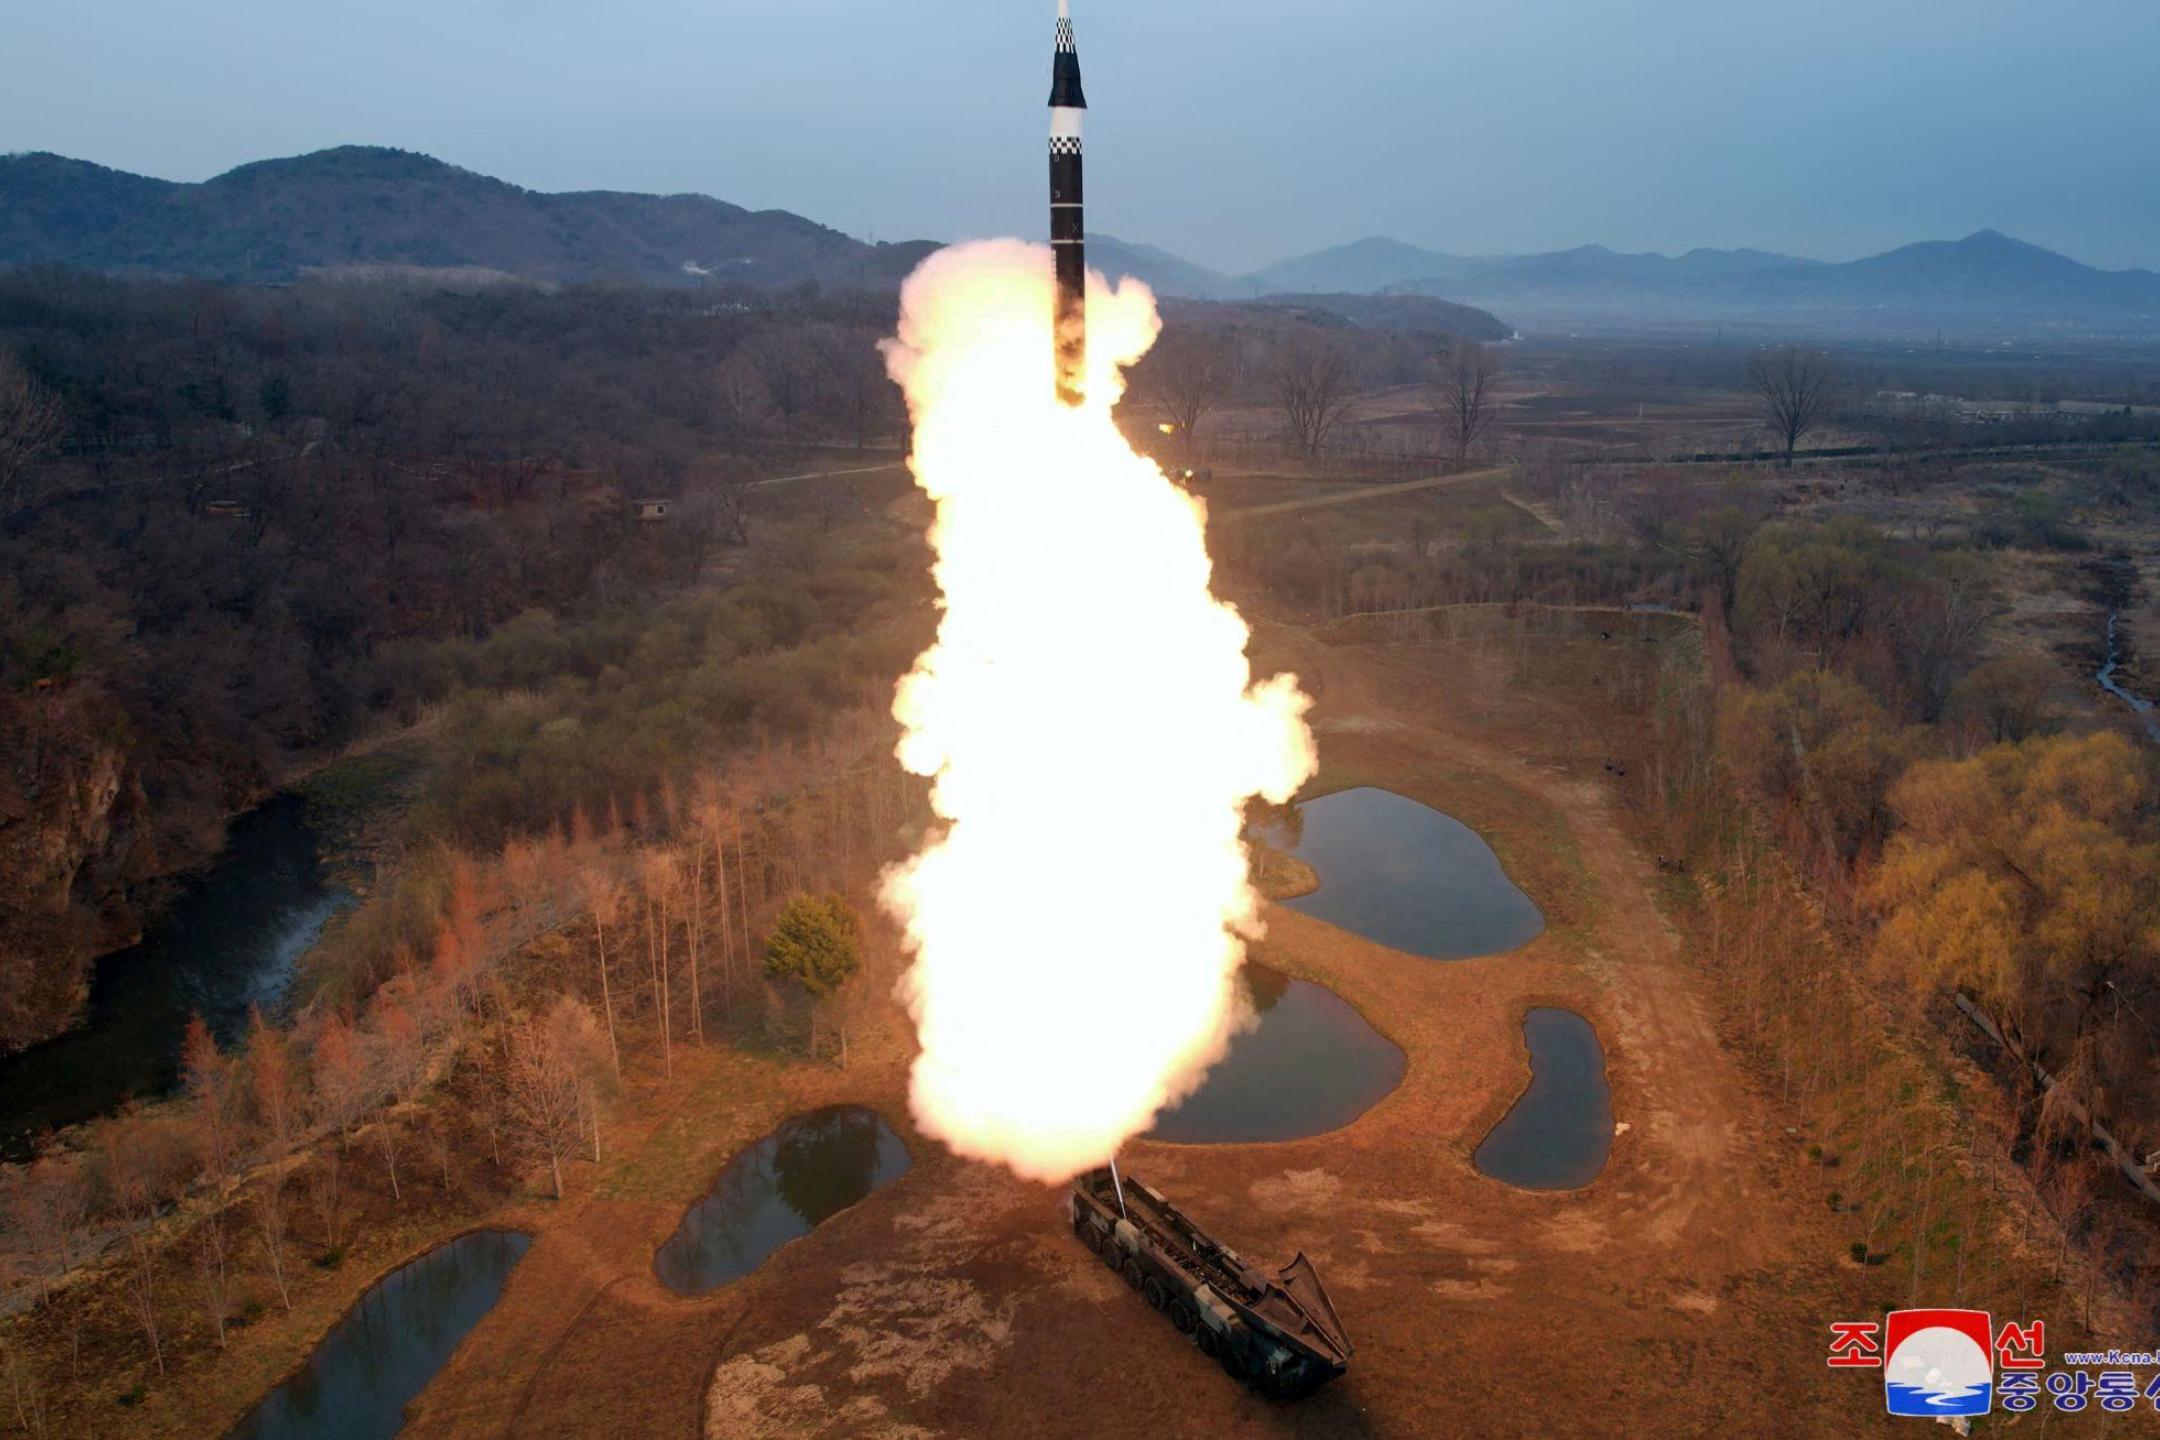 朝鲜试射新型防空导弹 官媒宣称无关区域安全 